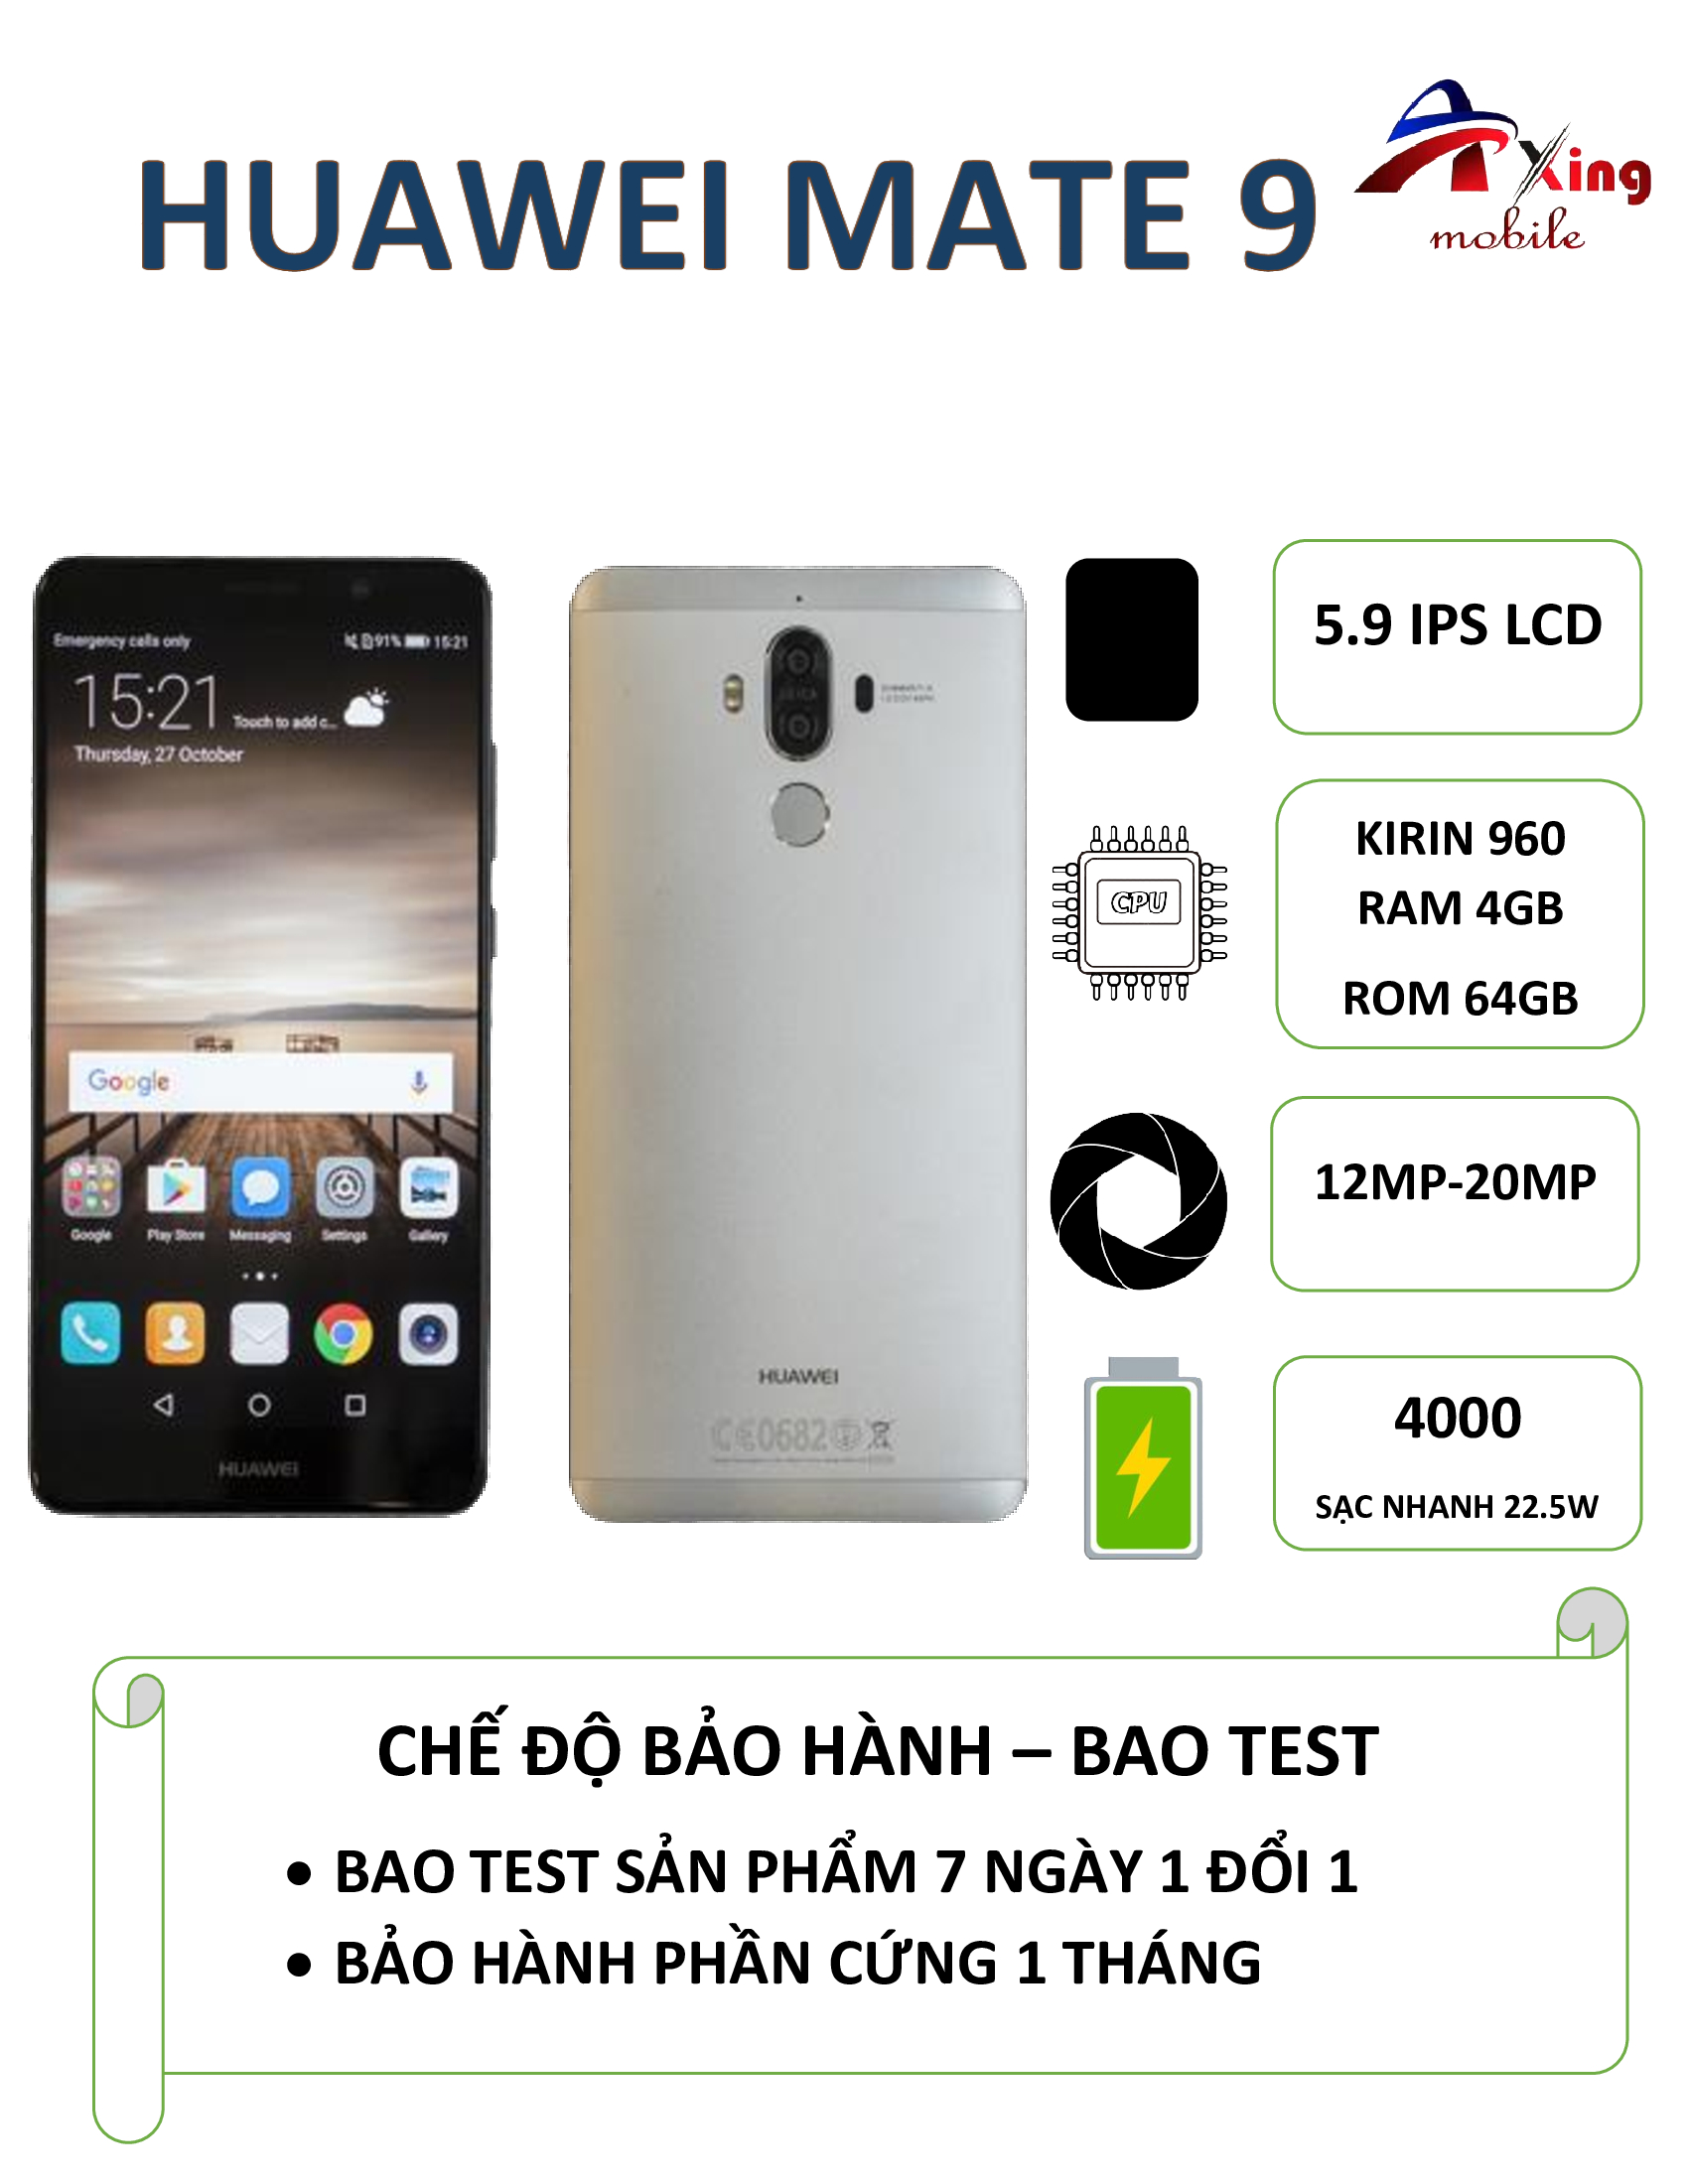 Điện thoại Huawei Mate 9 siêu phẩm giá rẻ 2 sim 2 sóng, cấu hình tốt, pin bền, camera đẹp trong tầm giá